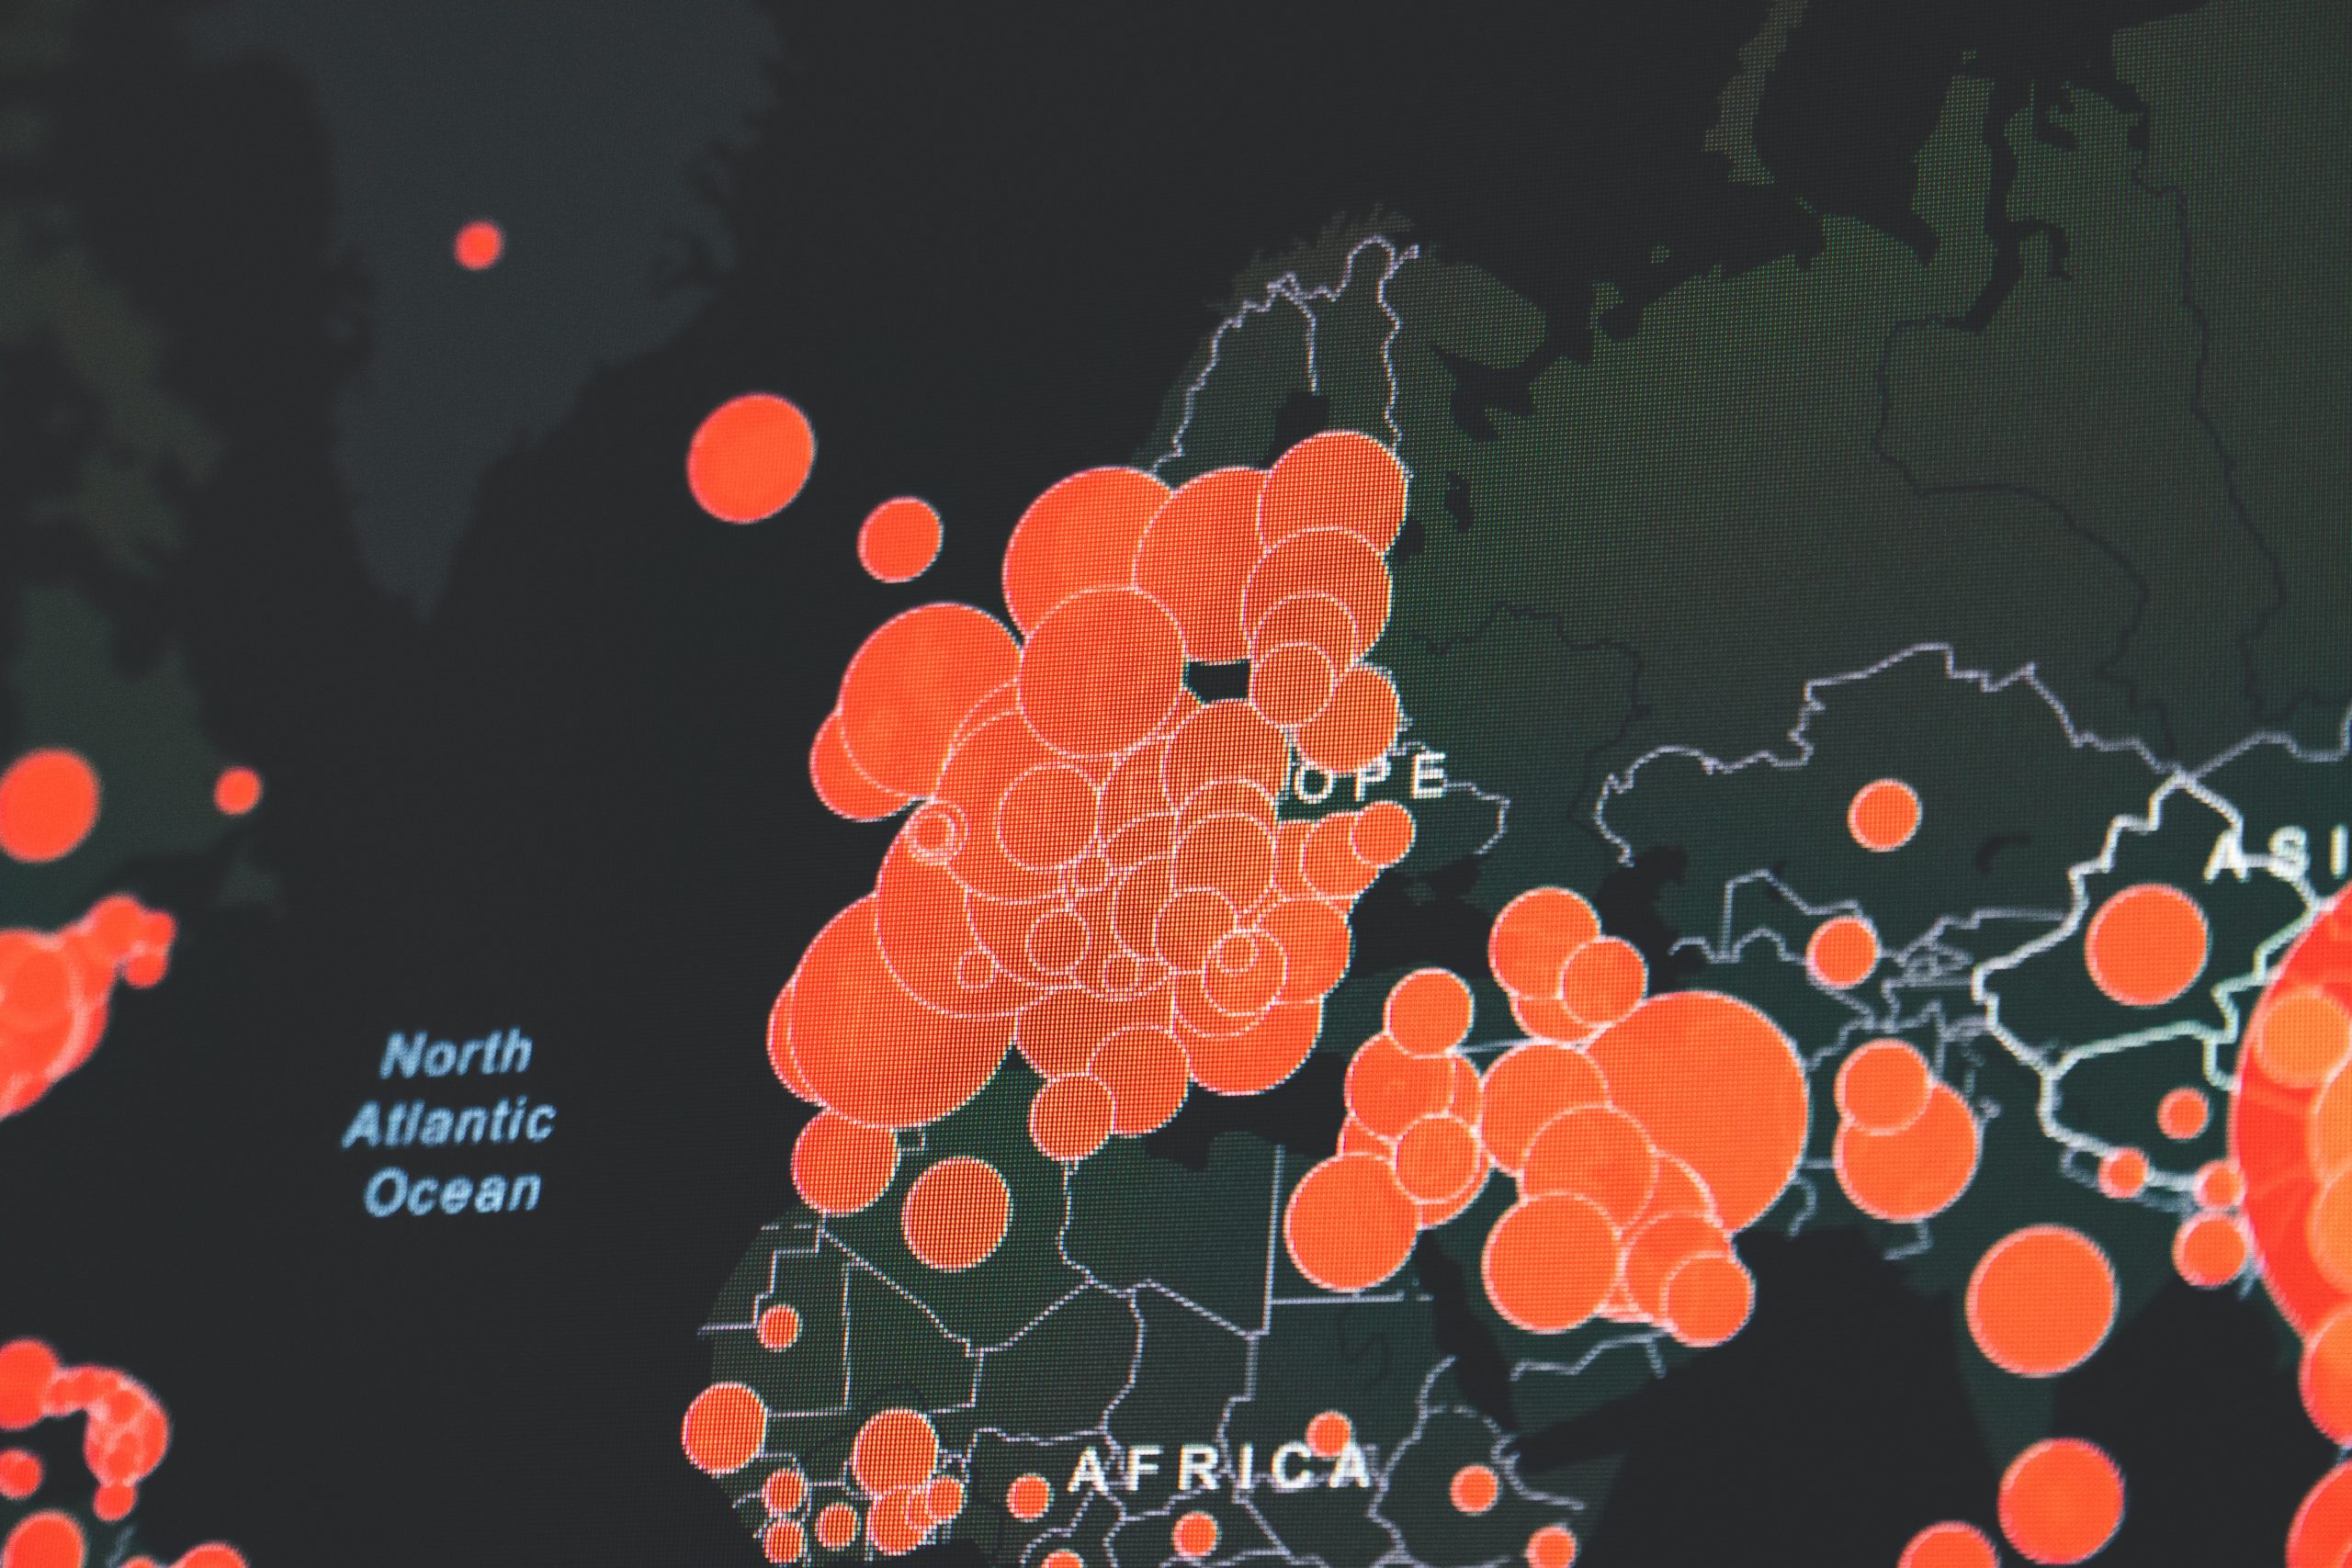 SARS-CoV-2 Karte zeigt Verbreitung der Pandemie in Europa